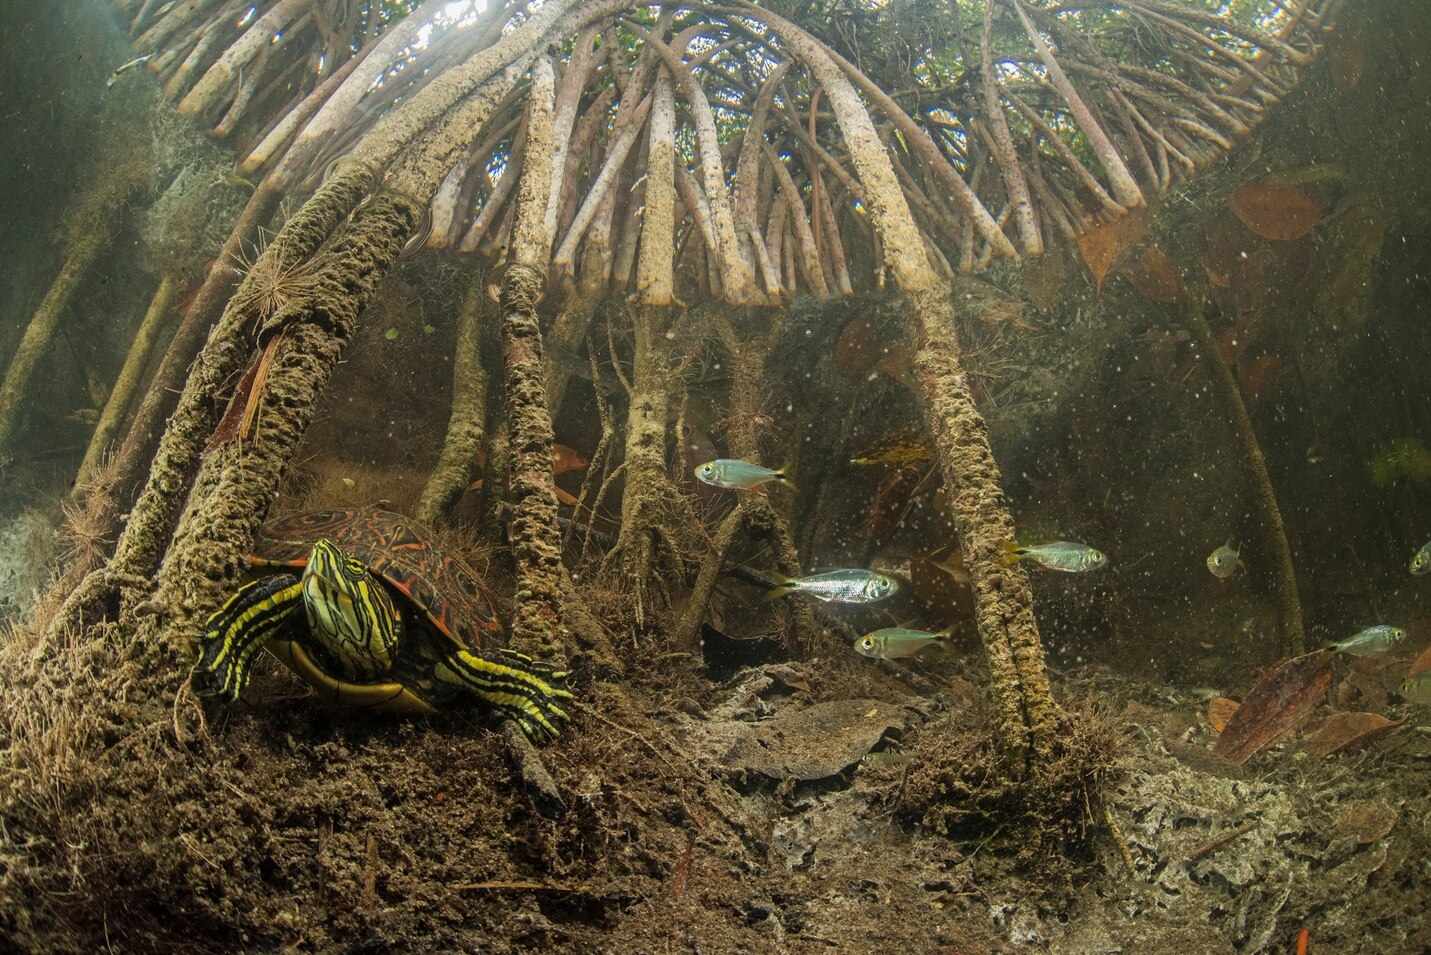 锦龟在红树林水下根部找到藏身处。 PHOTOGRAPH BY OCTAVIO ABURTO